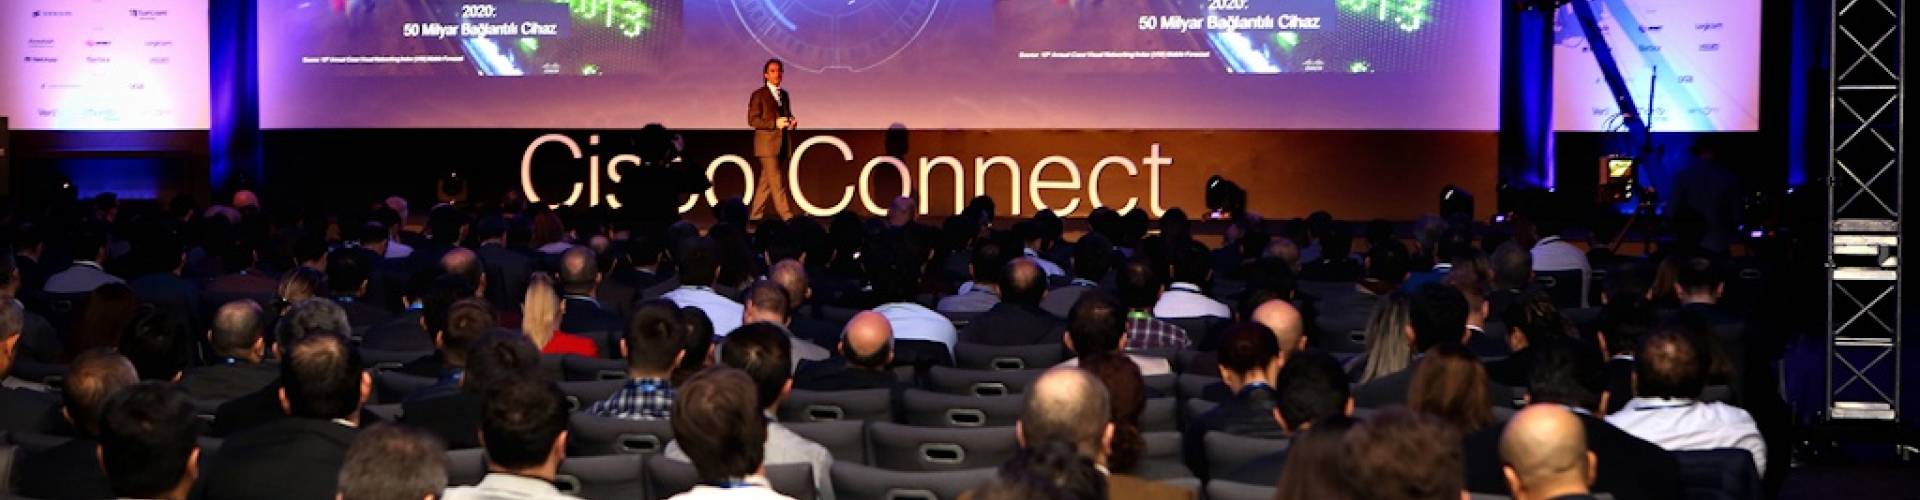 Biltam'ın da Sponsor olduğu Cisco Connect 2017 Swissotel'de gerçekleştirildi 